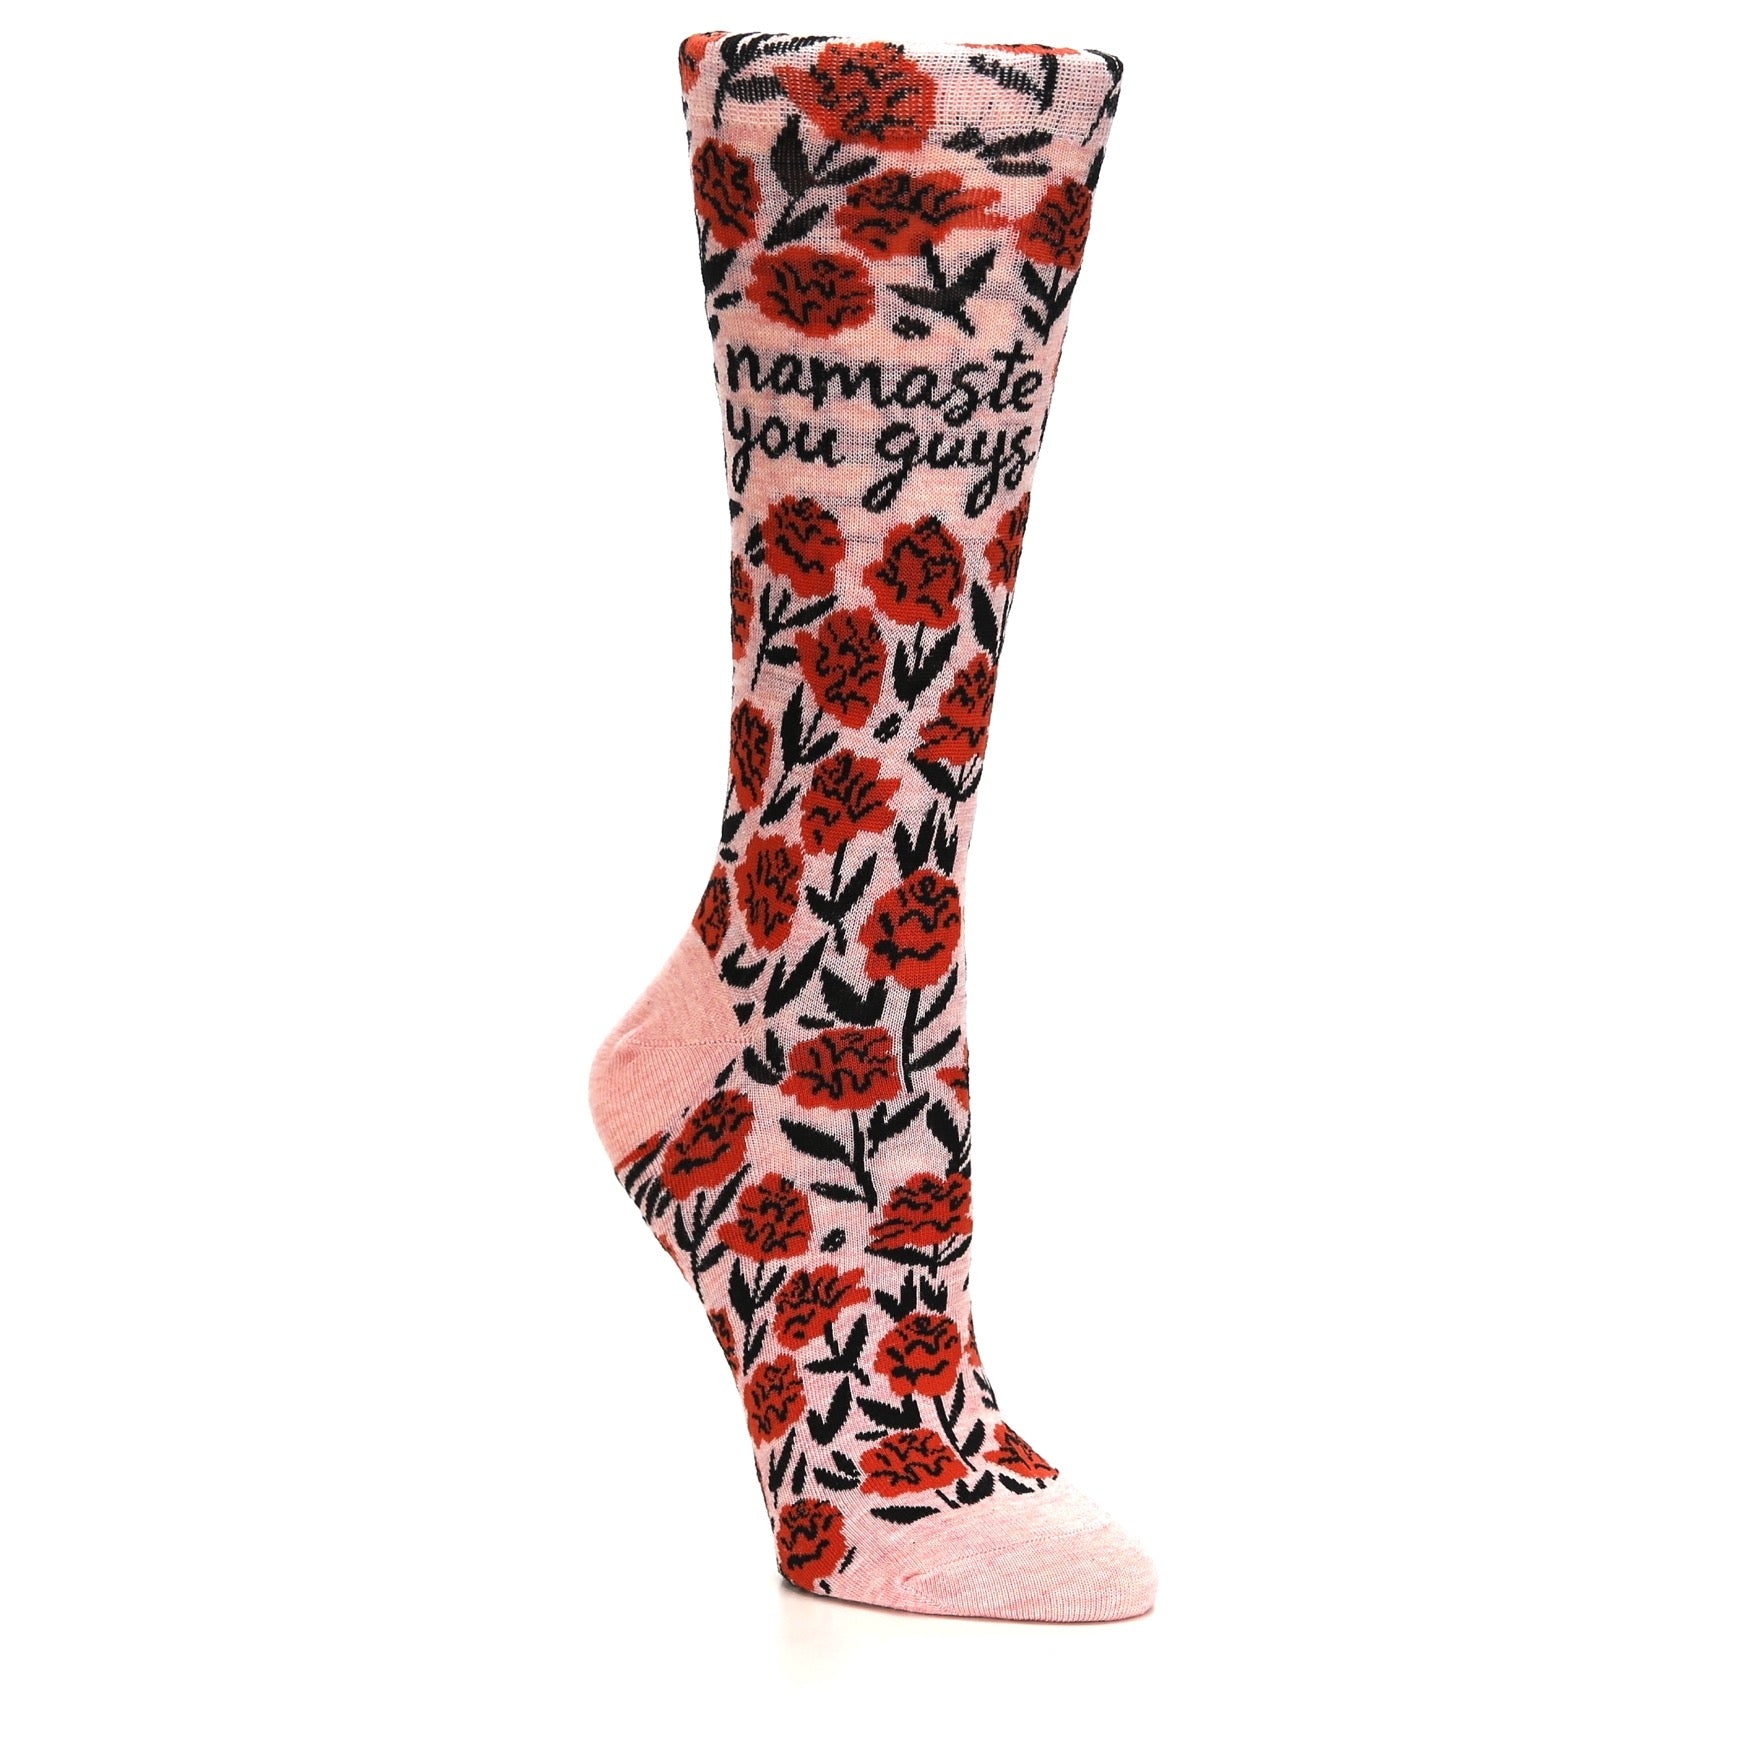 Namaste You Guys Socks - Women's Novelty Socks